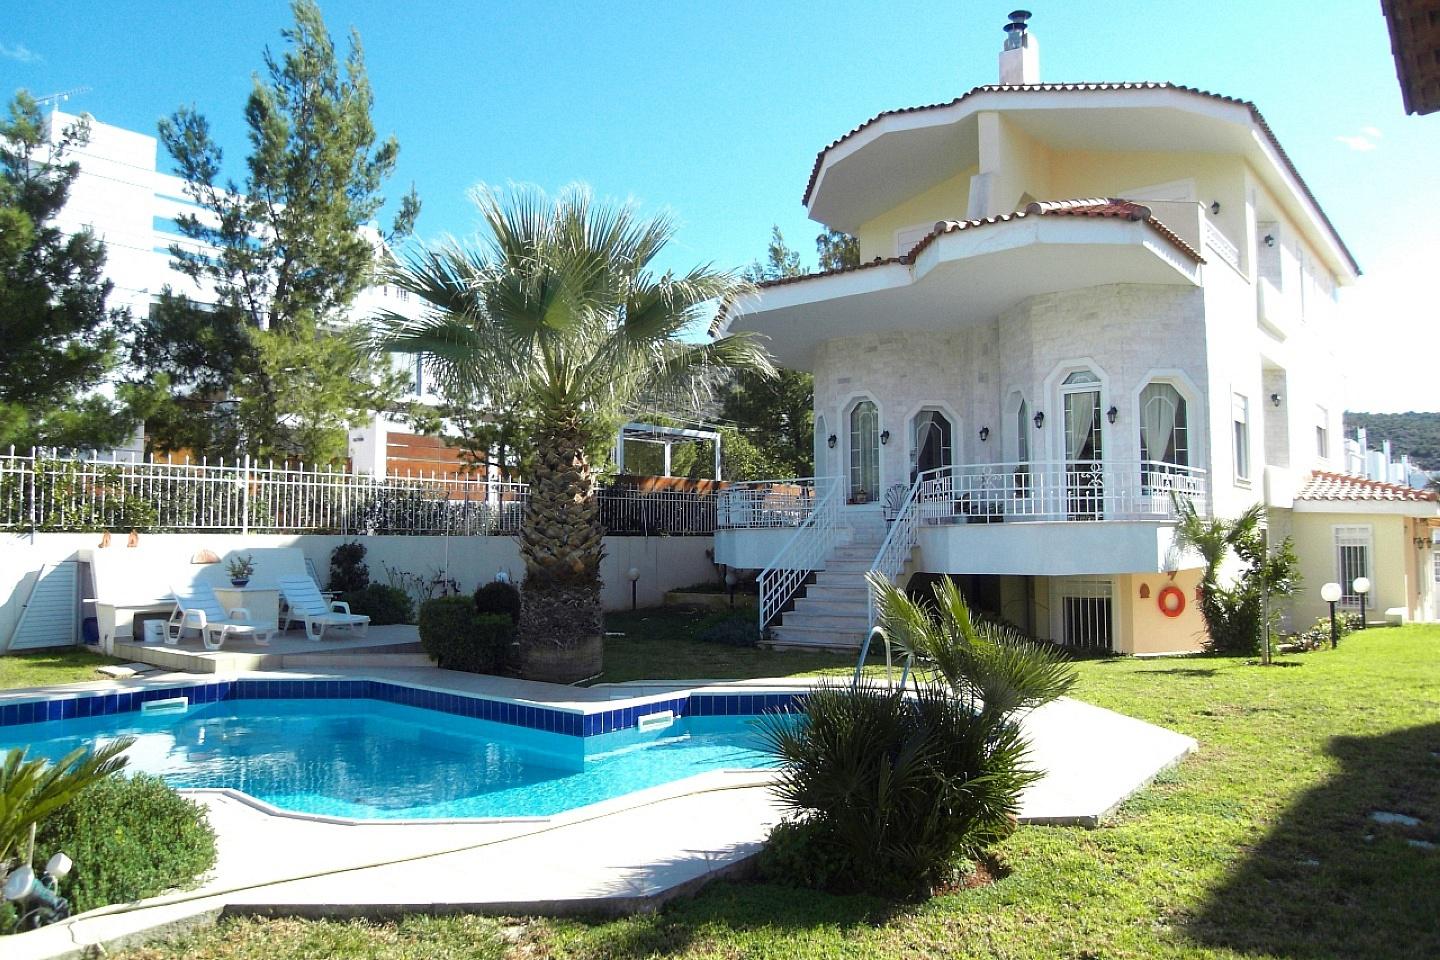 Villa for sale in Vari. Real estate in Greece.